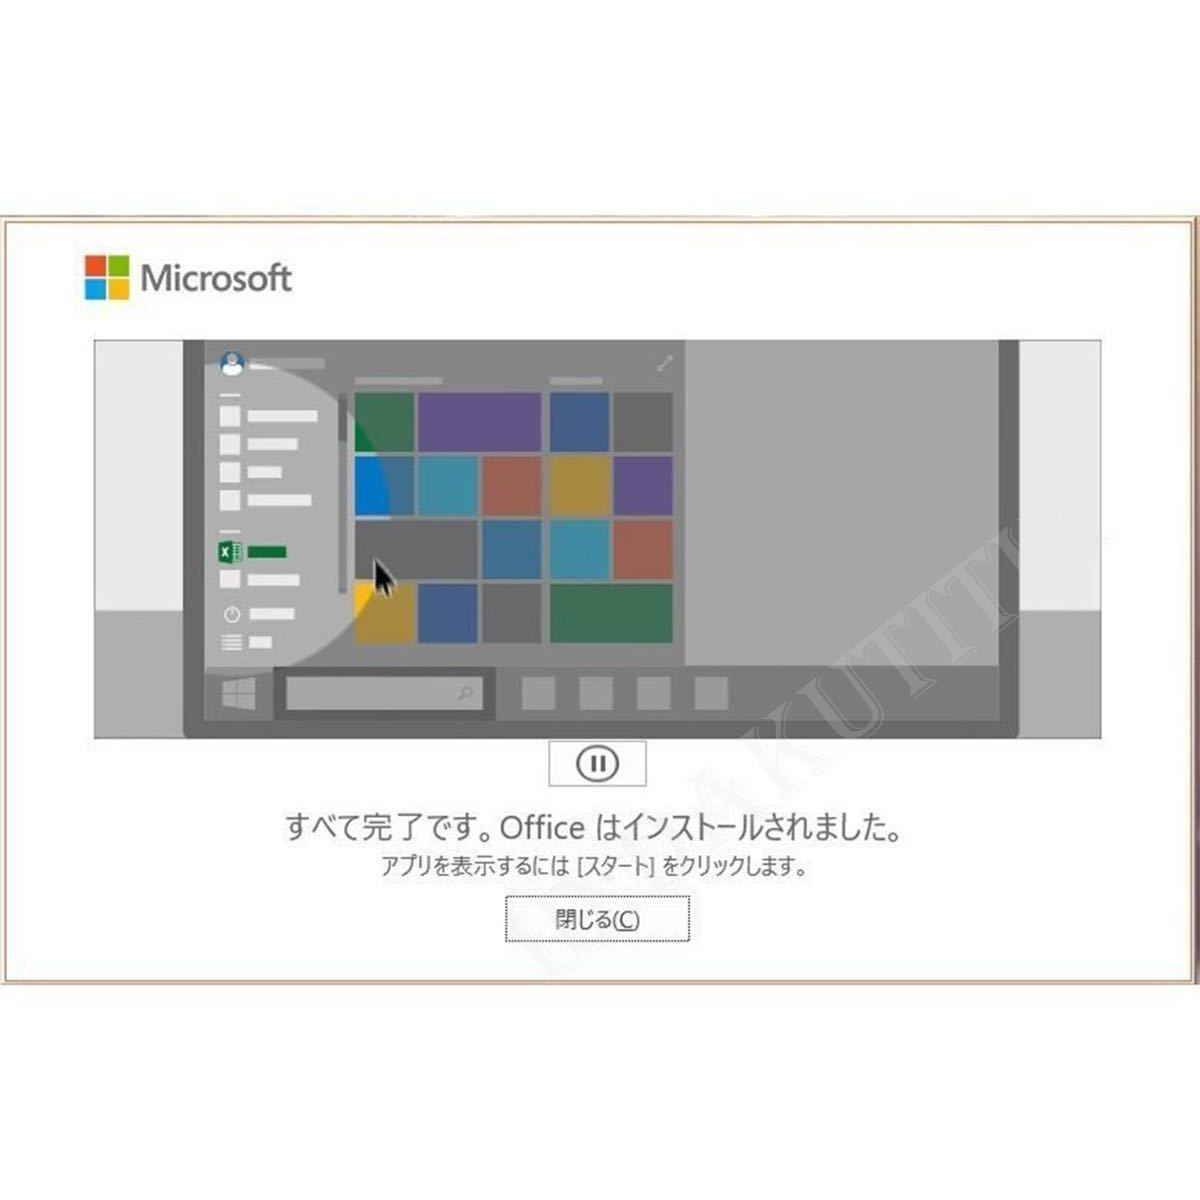 【即決あり】Office 2021 Professional Plus プロダクトキー 32/64bit版 日本語対応 手順書 保証有 特典付 永年ライセンス2_画像5